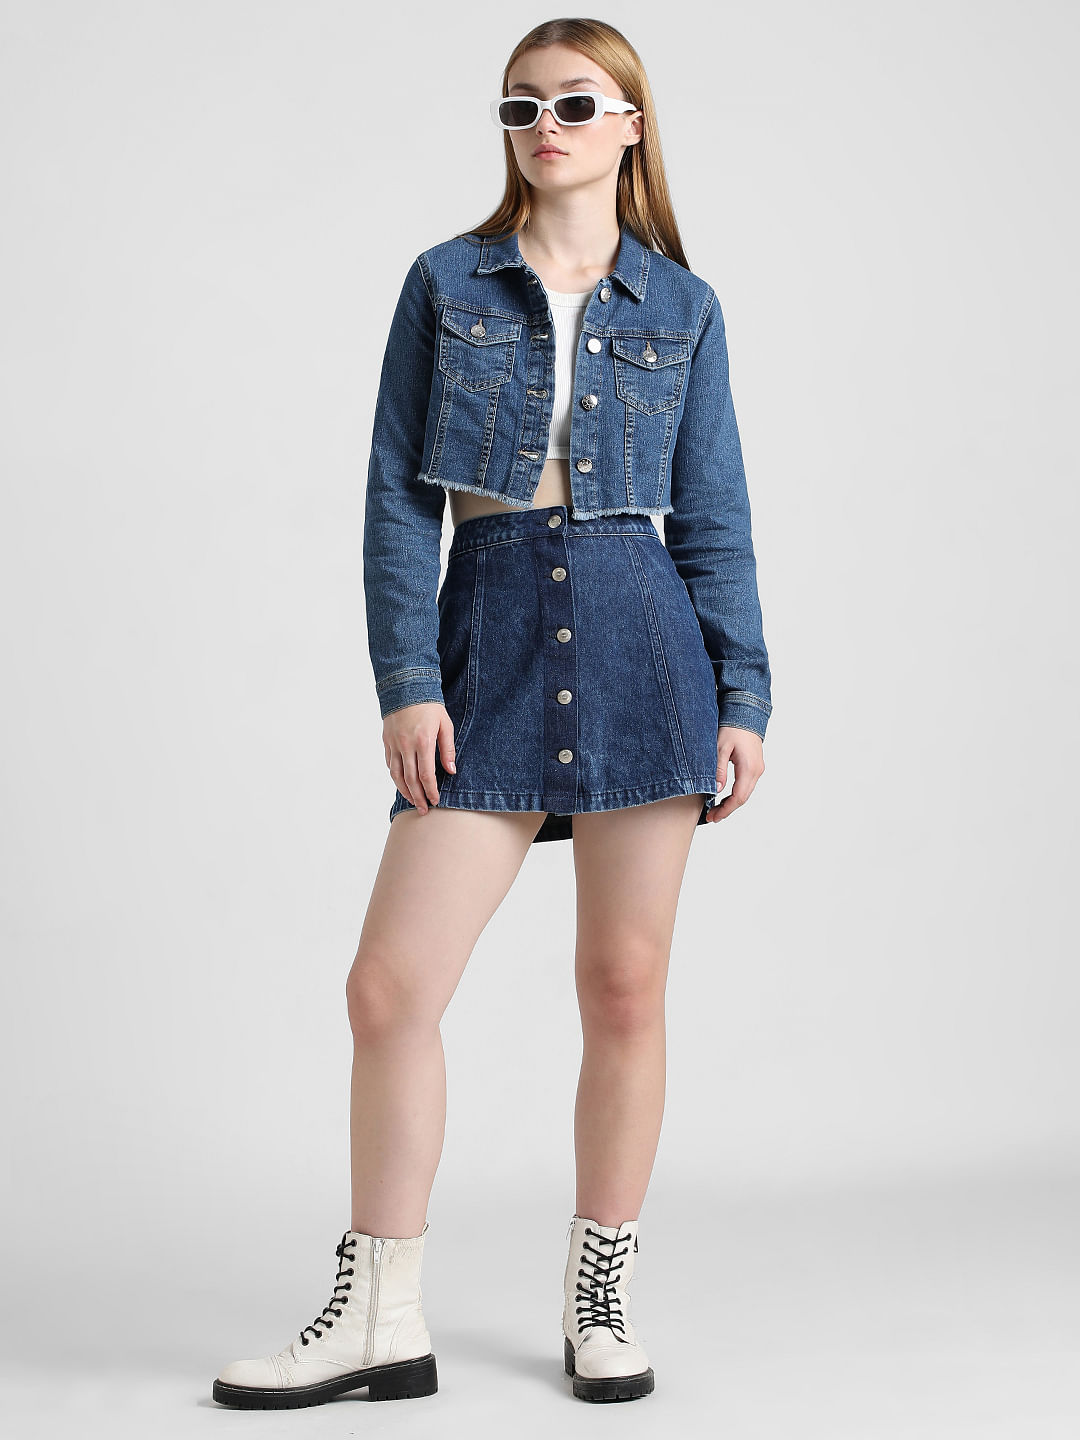 Trendy comfy fashionable denim jacket for girls kids